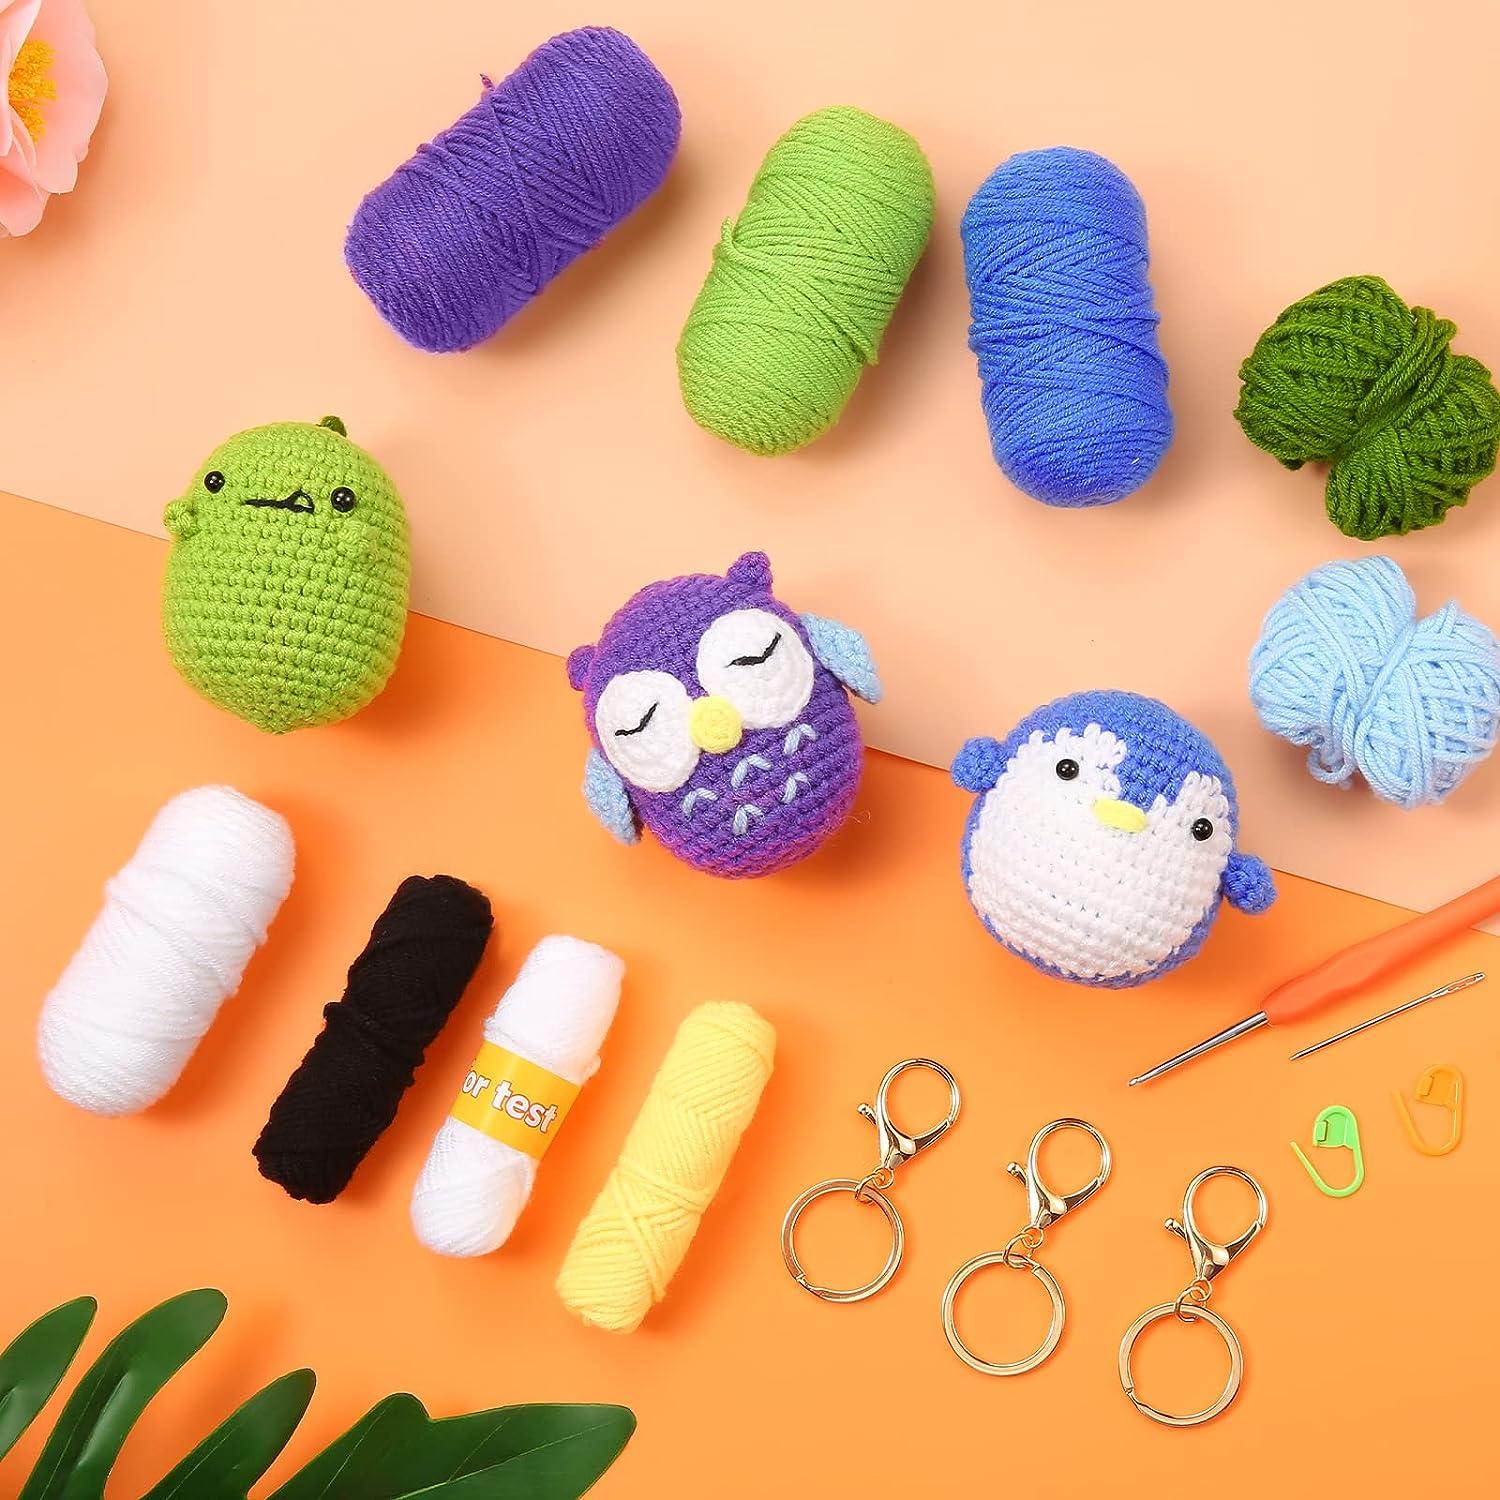  Beginners Crochet Kit, DIY Crochet Kit For Beginners